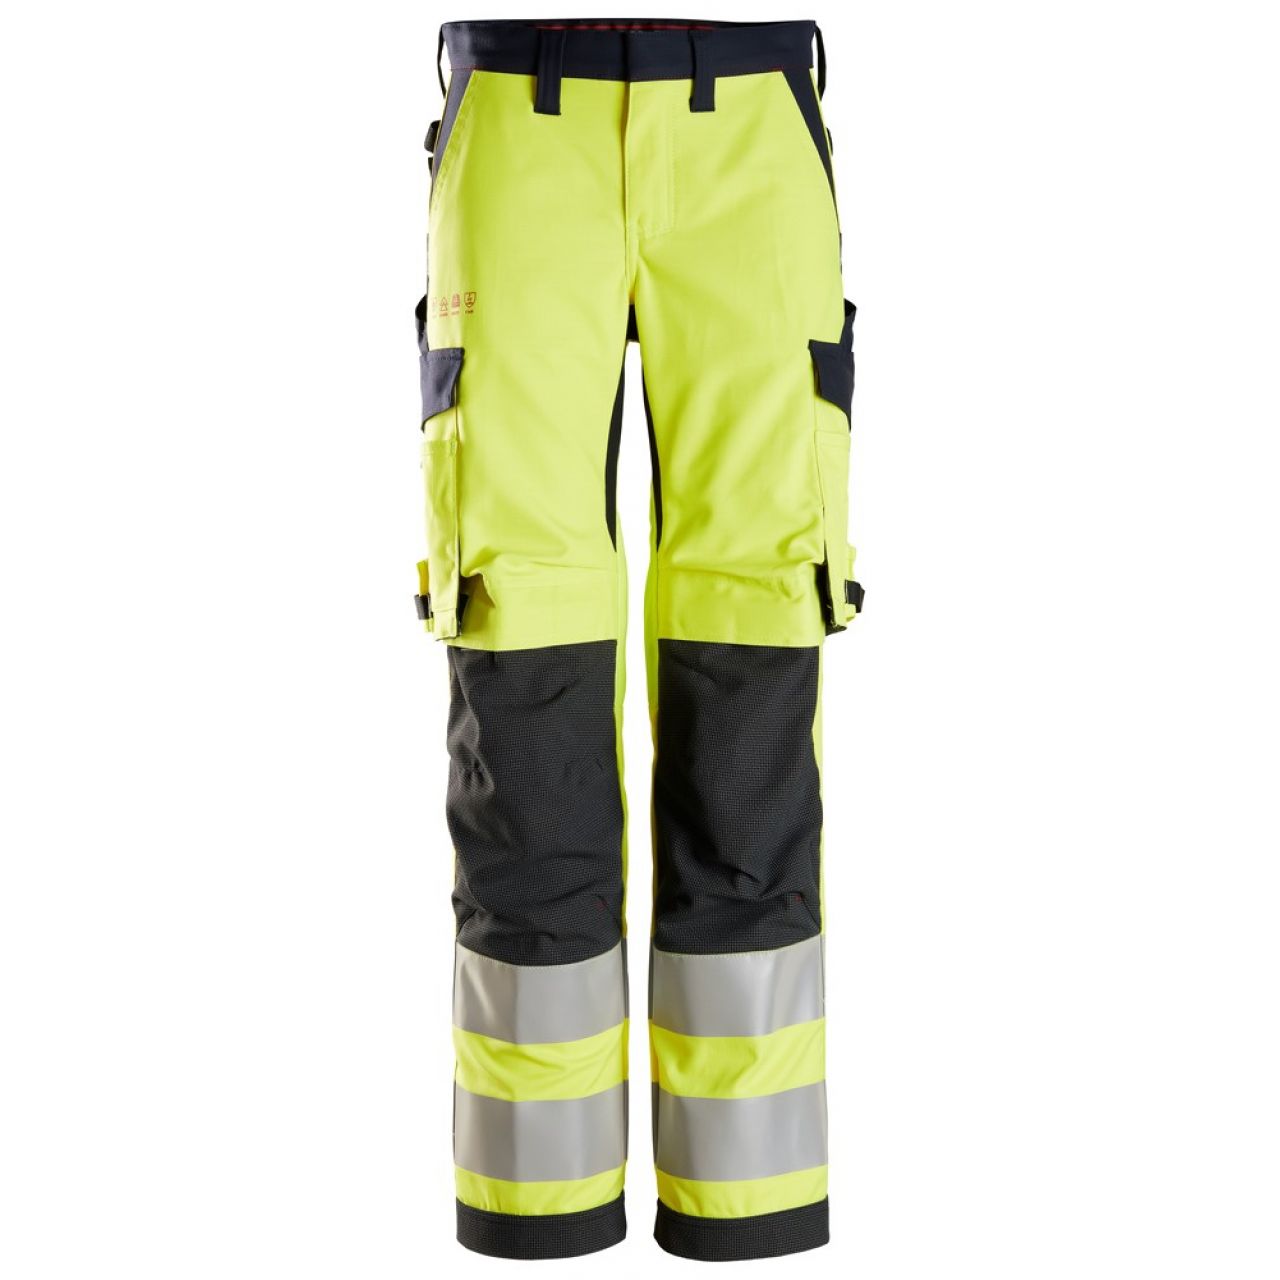 6760 Pantalones largos de trabajo de alta visibilidad clase 2 para mujer ProtecWork amarillo-azul marino talla 84